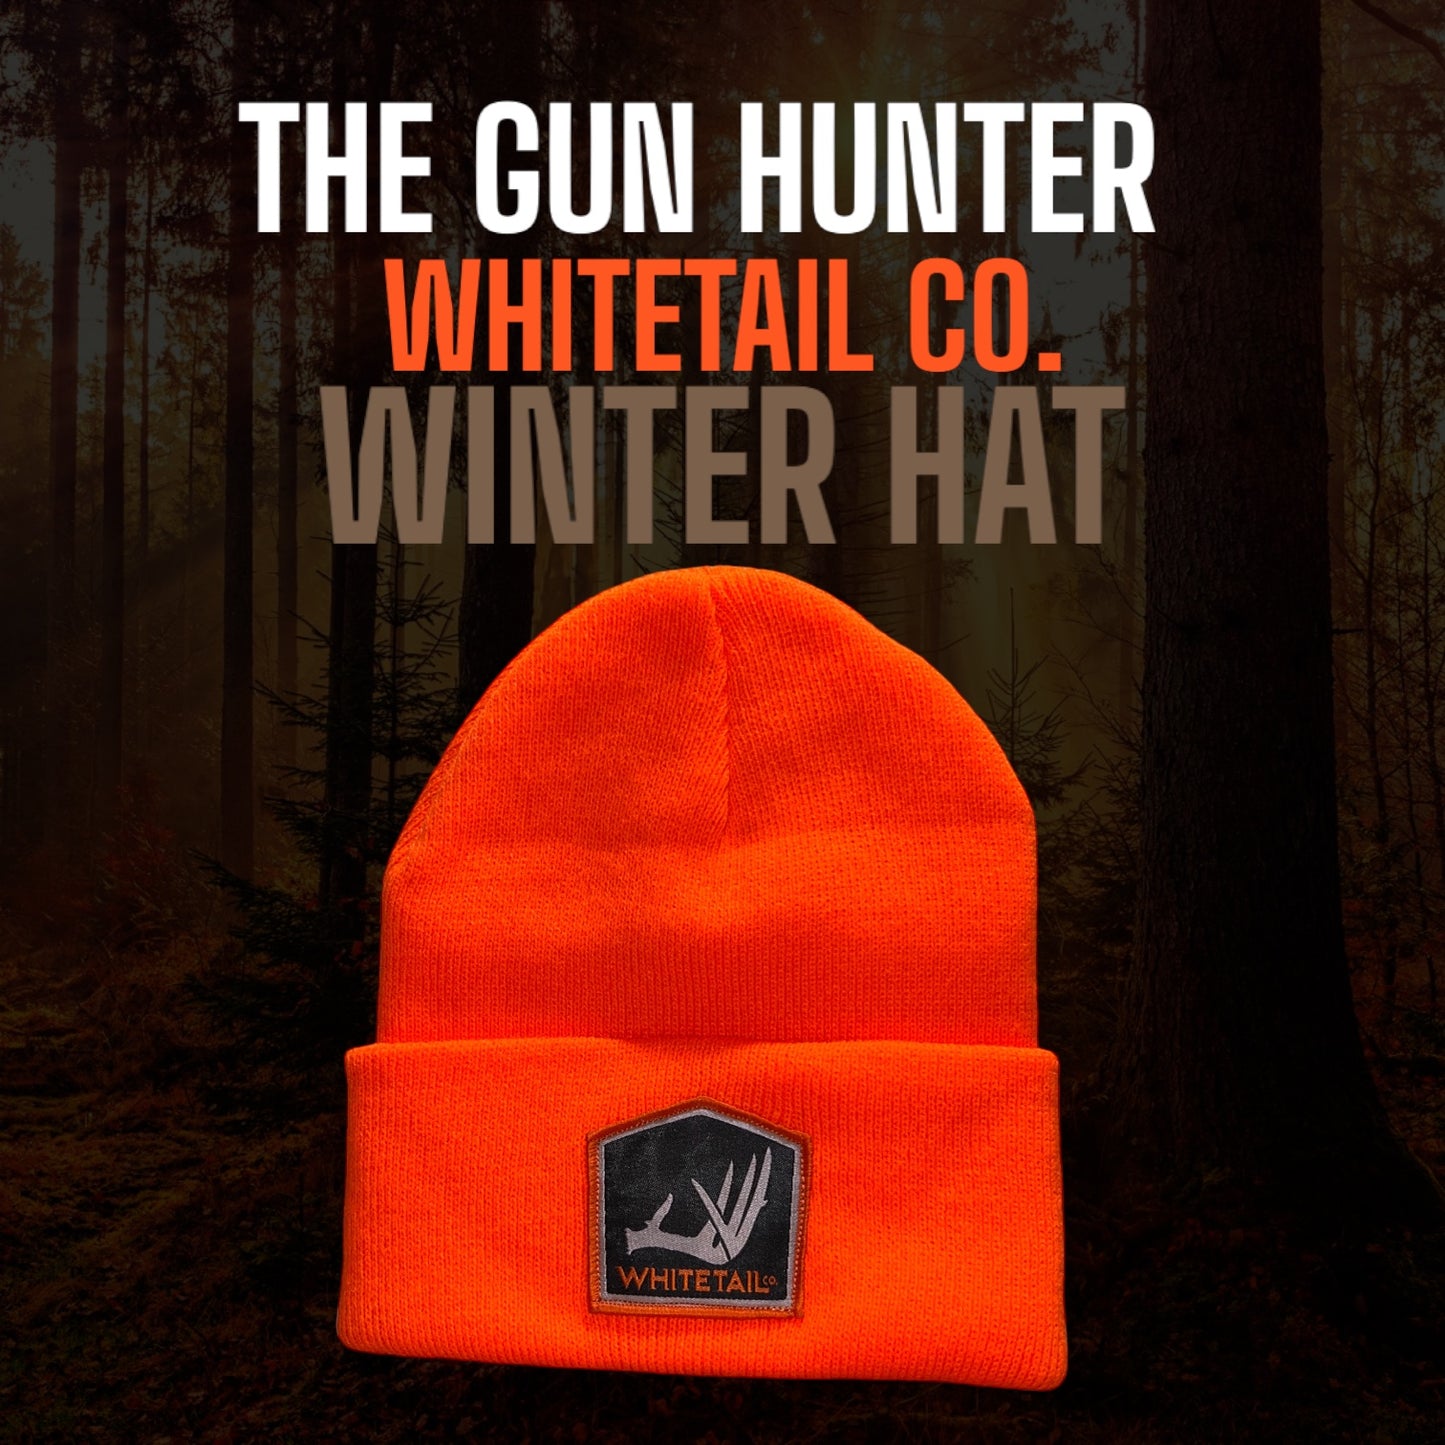 Whitetail Co. Gun Hunter Knit Hat